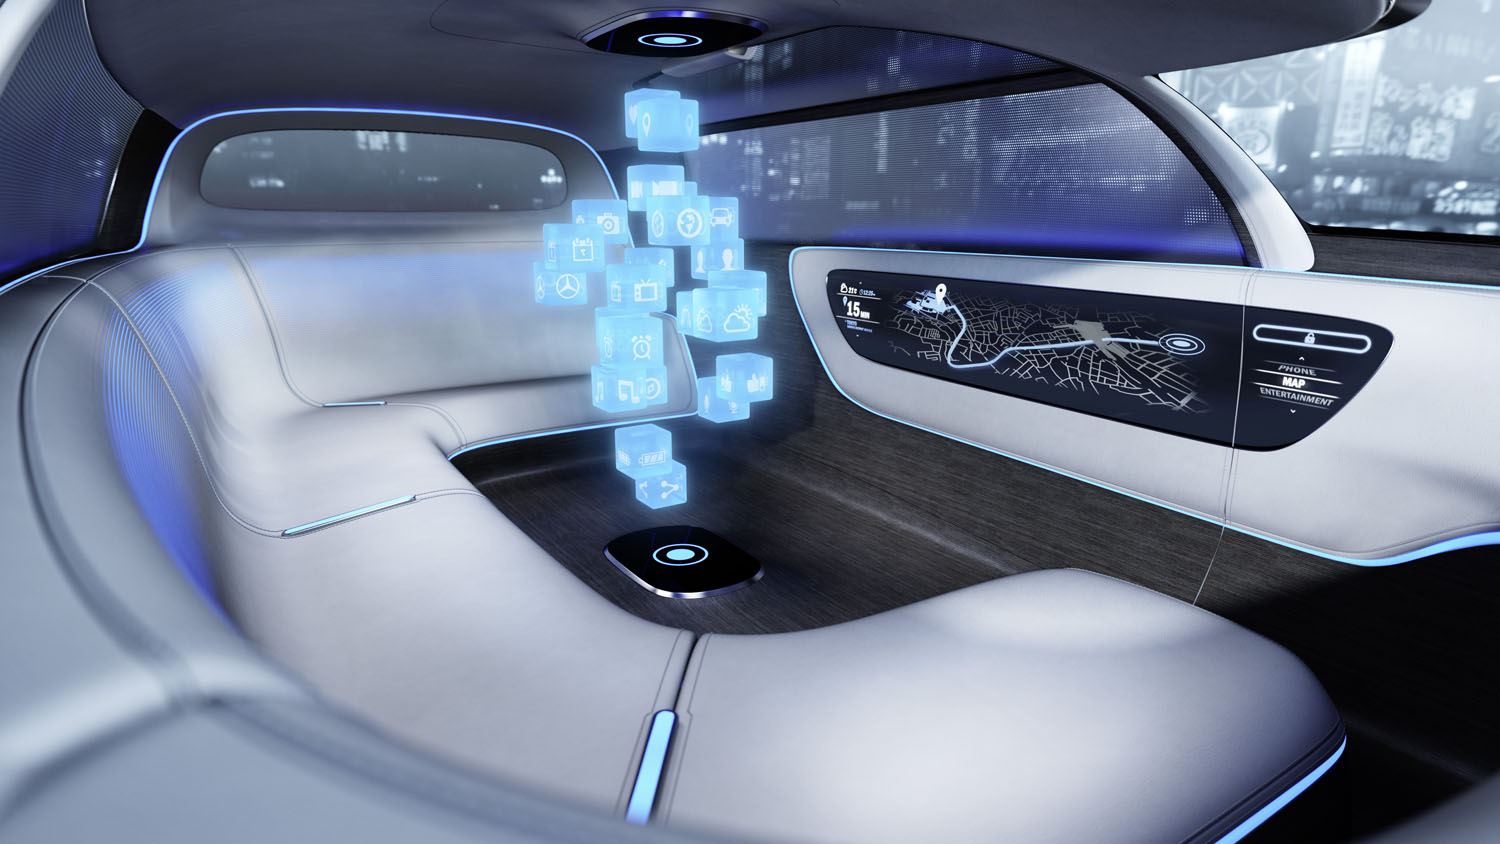 Mercedes-Benz Vision Tokyo concept